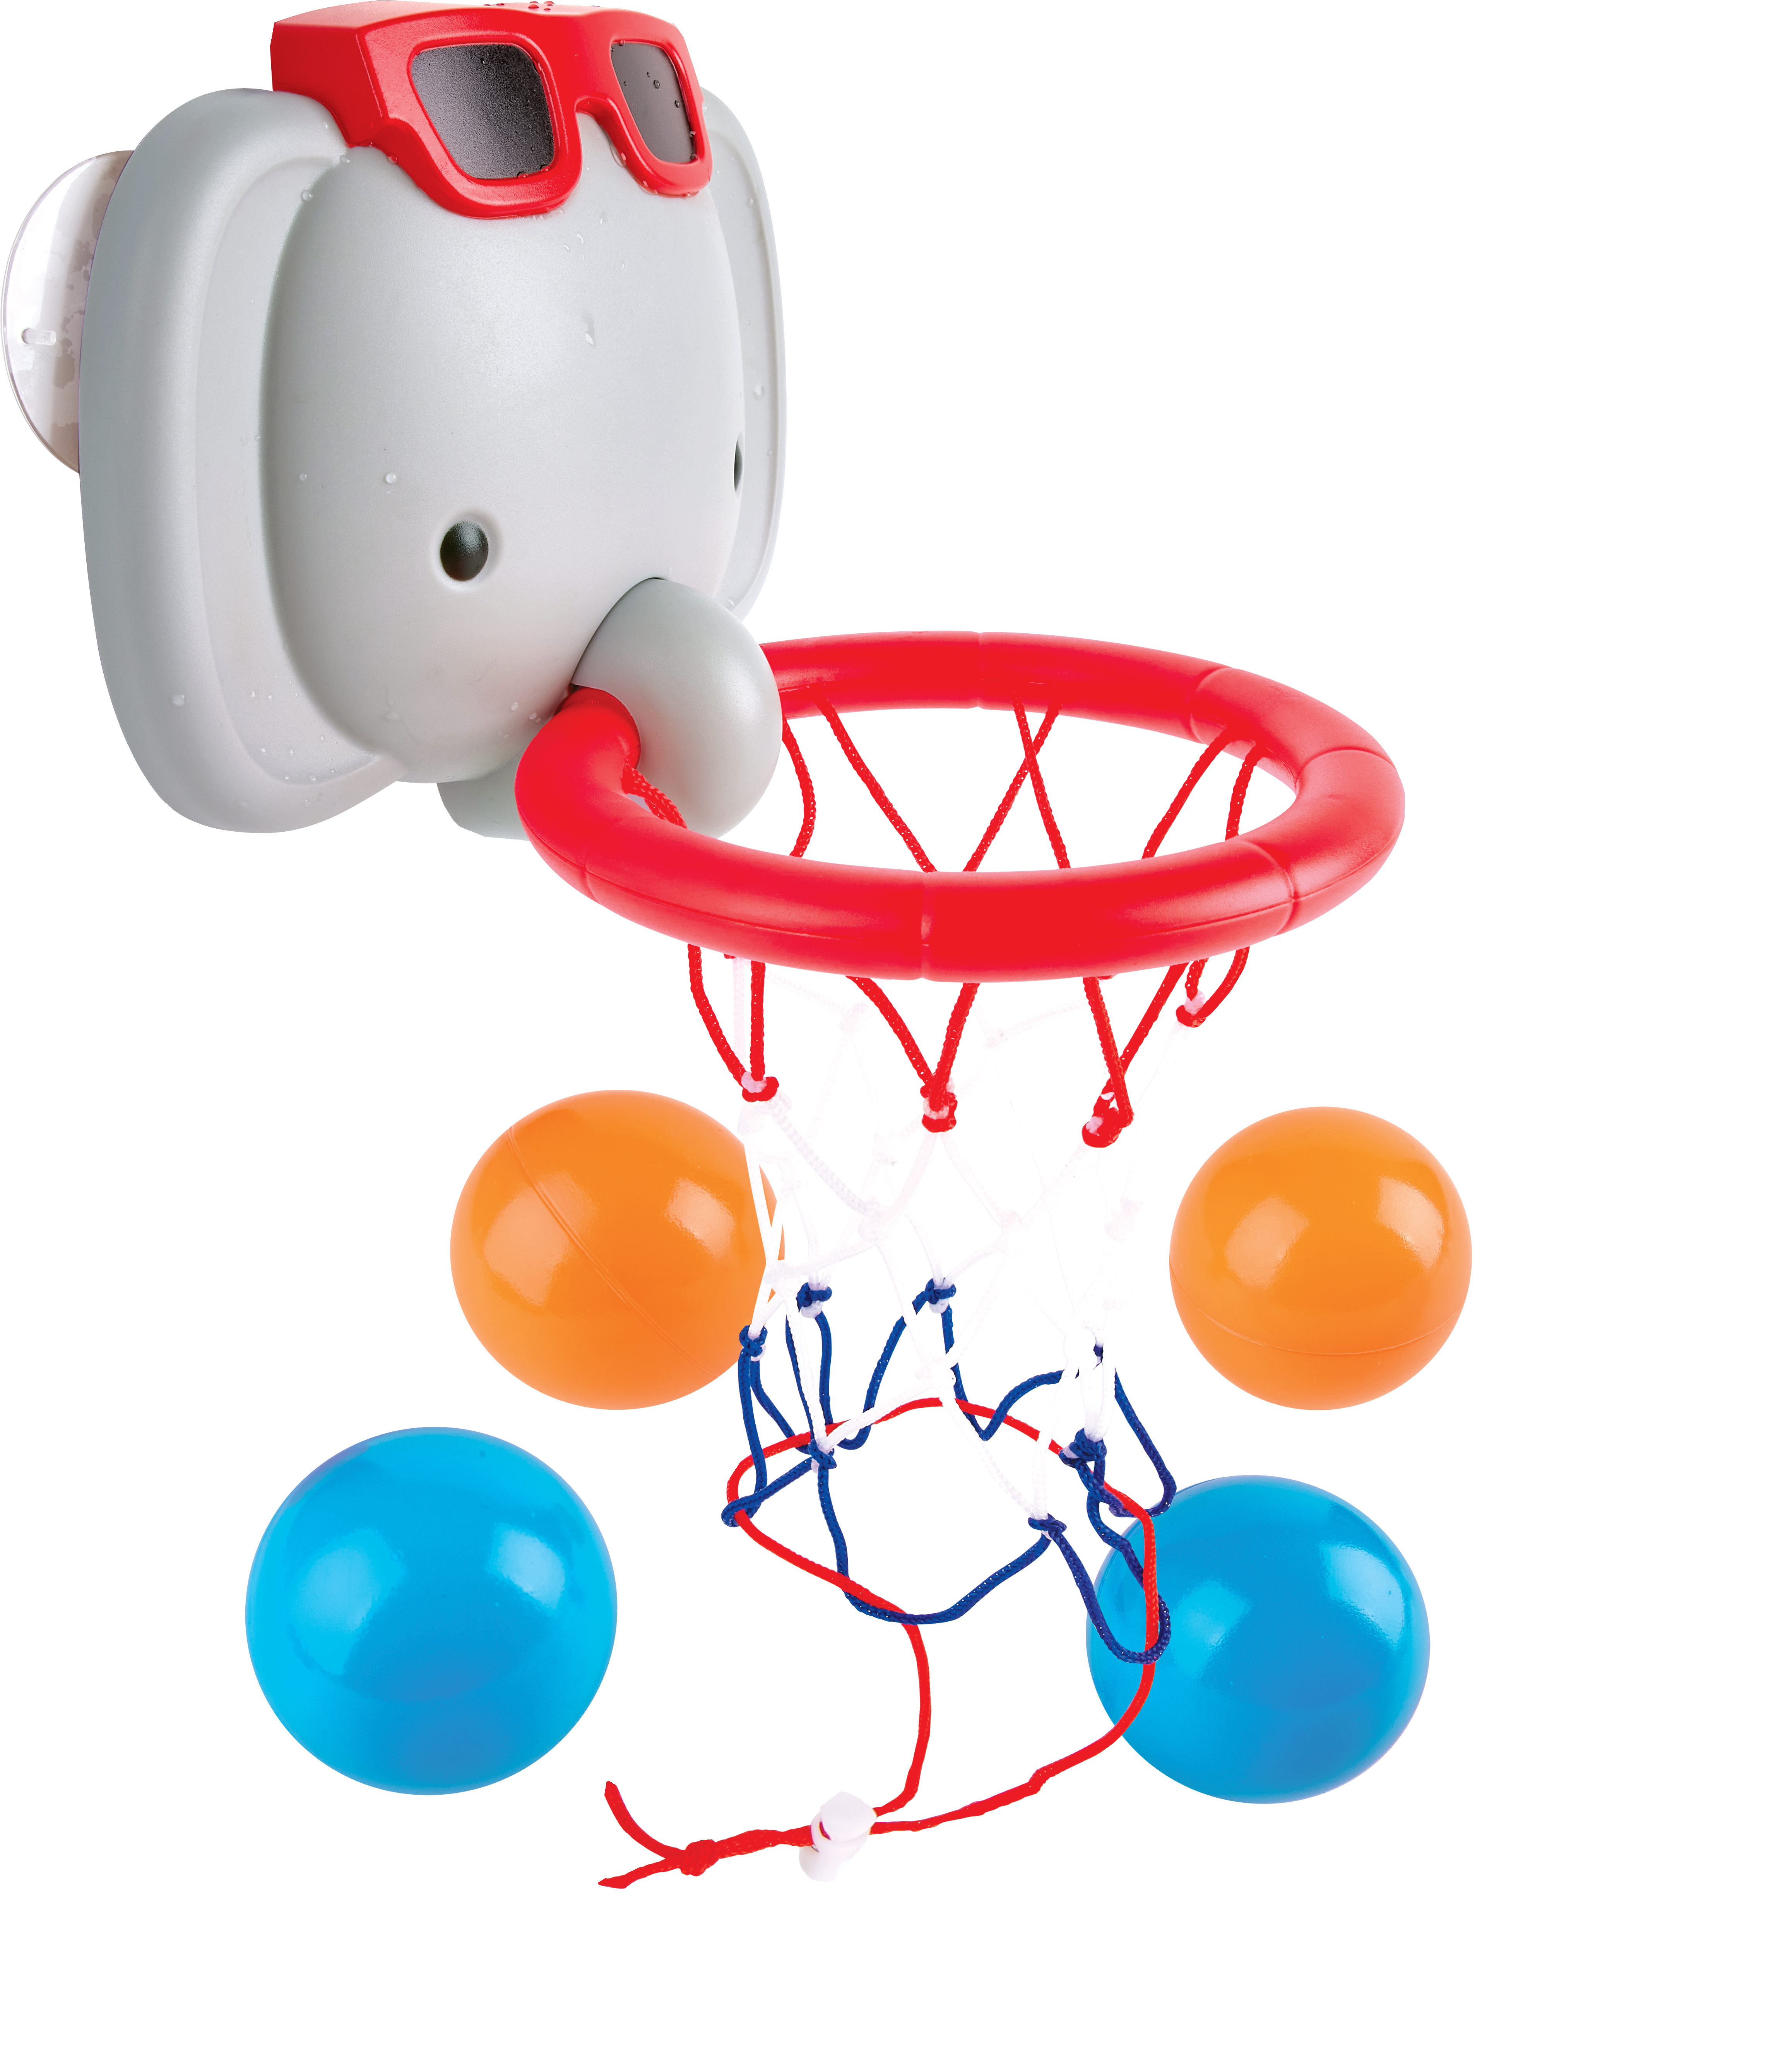 HAPE Spielwaren Badespaß mit dem Elefanten-Basketballkorb Badespielzeug  Kleinkind Spielzeug bayw1120